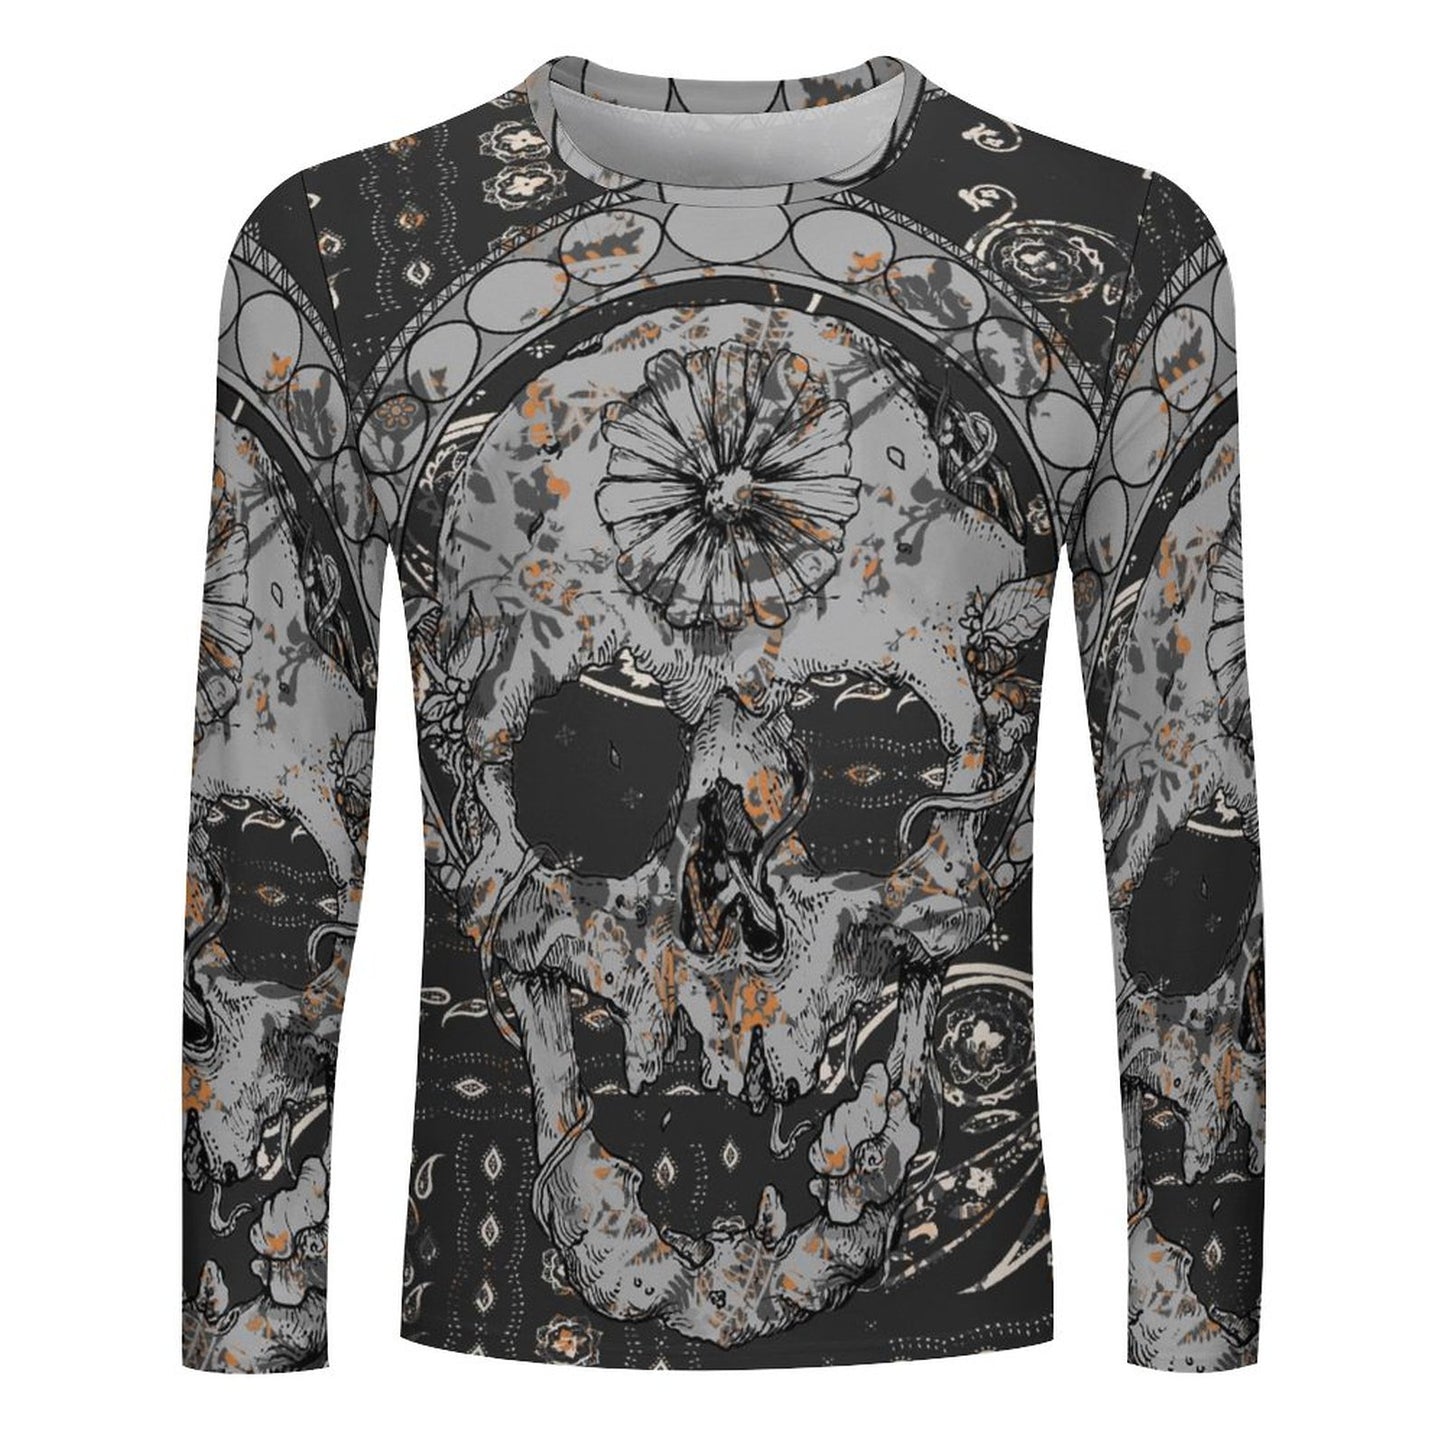 Online DIY T-shirt for Men Full Print Long Sleeve Skull